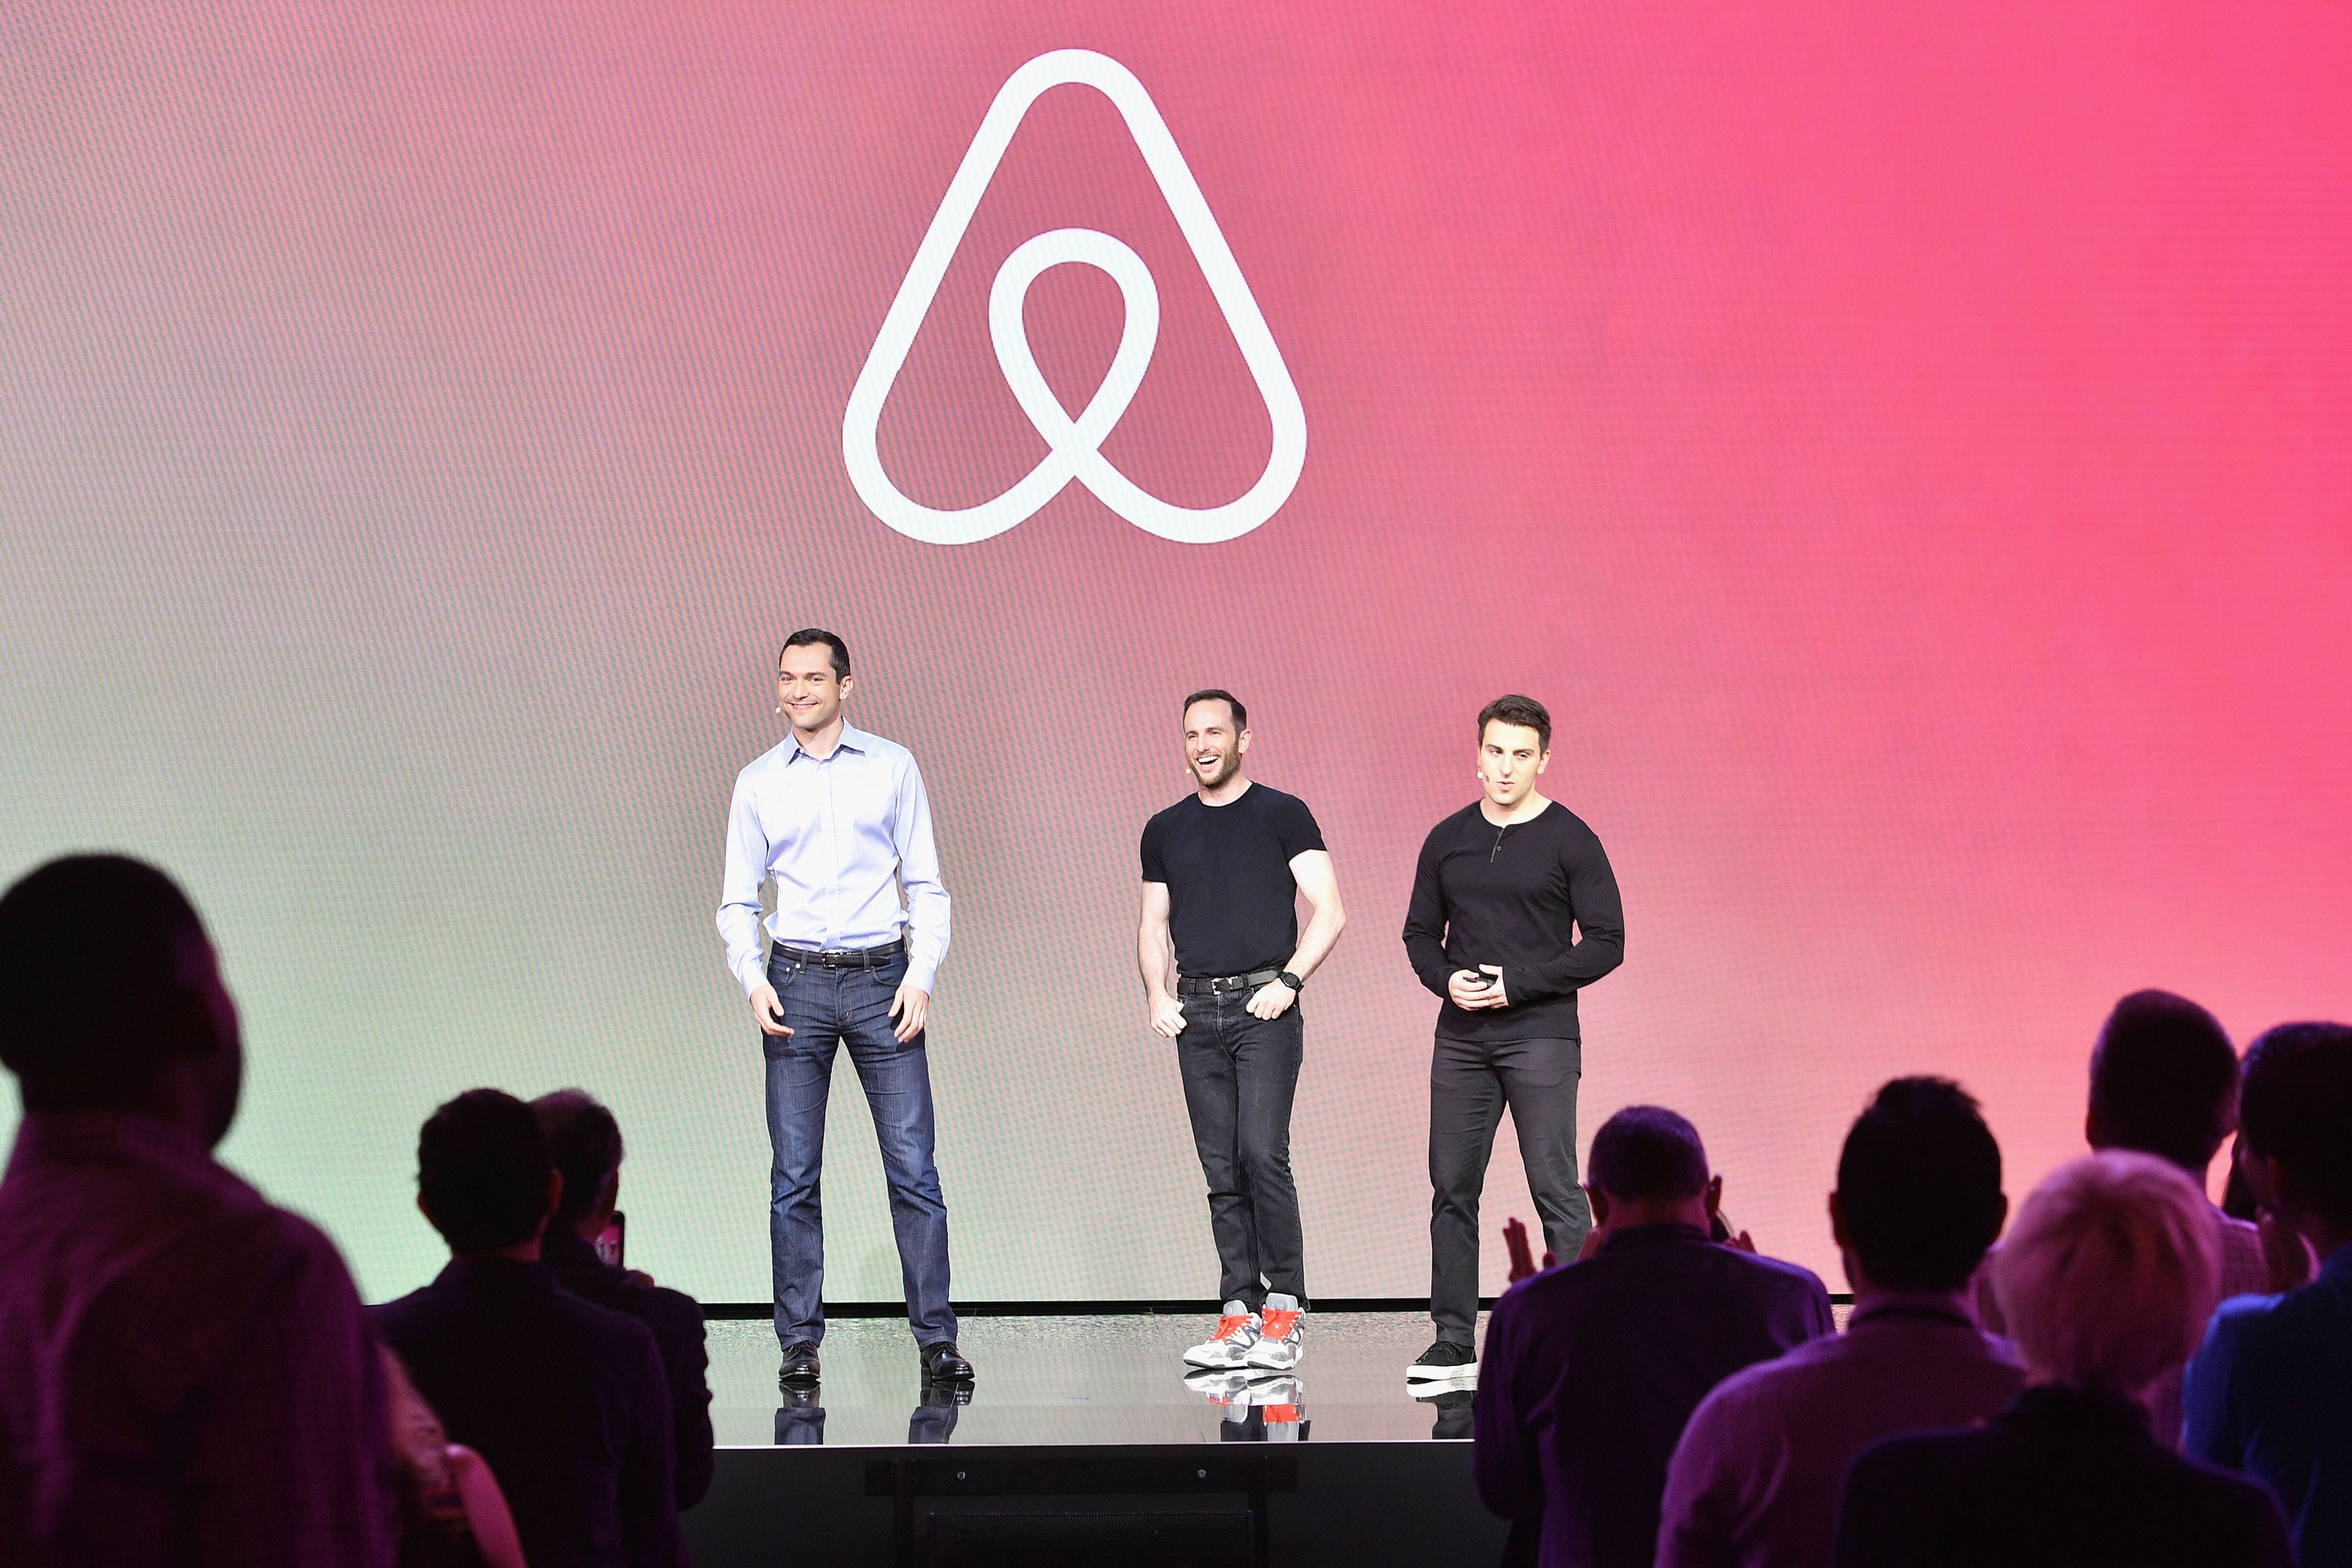 Los fundadores de Airbnb, Nathan Blecharczyk, el Director de Producto Joe Gebbia y el CEO Brian Chesky, durante la presentación de 'Introducing Trips' en el Airbnb Open de 2016 celebrado en Los Ángeles.